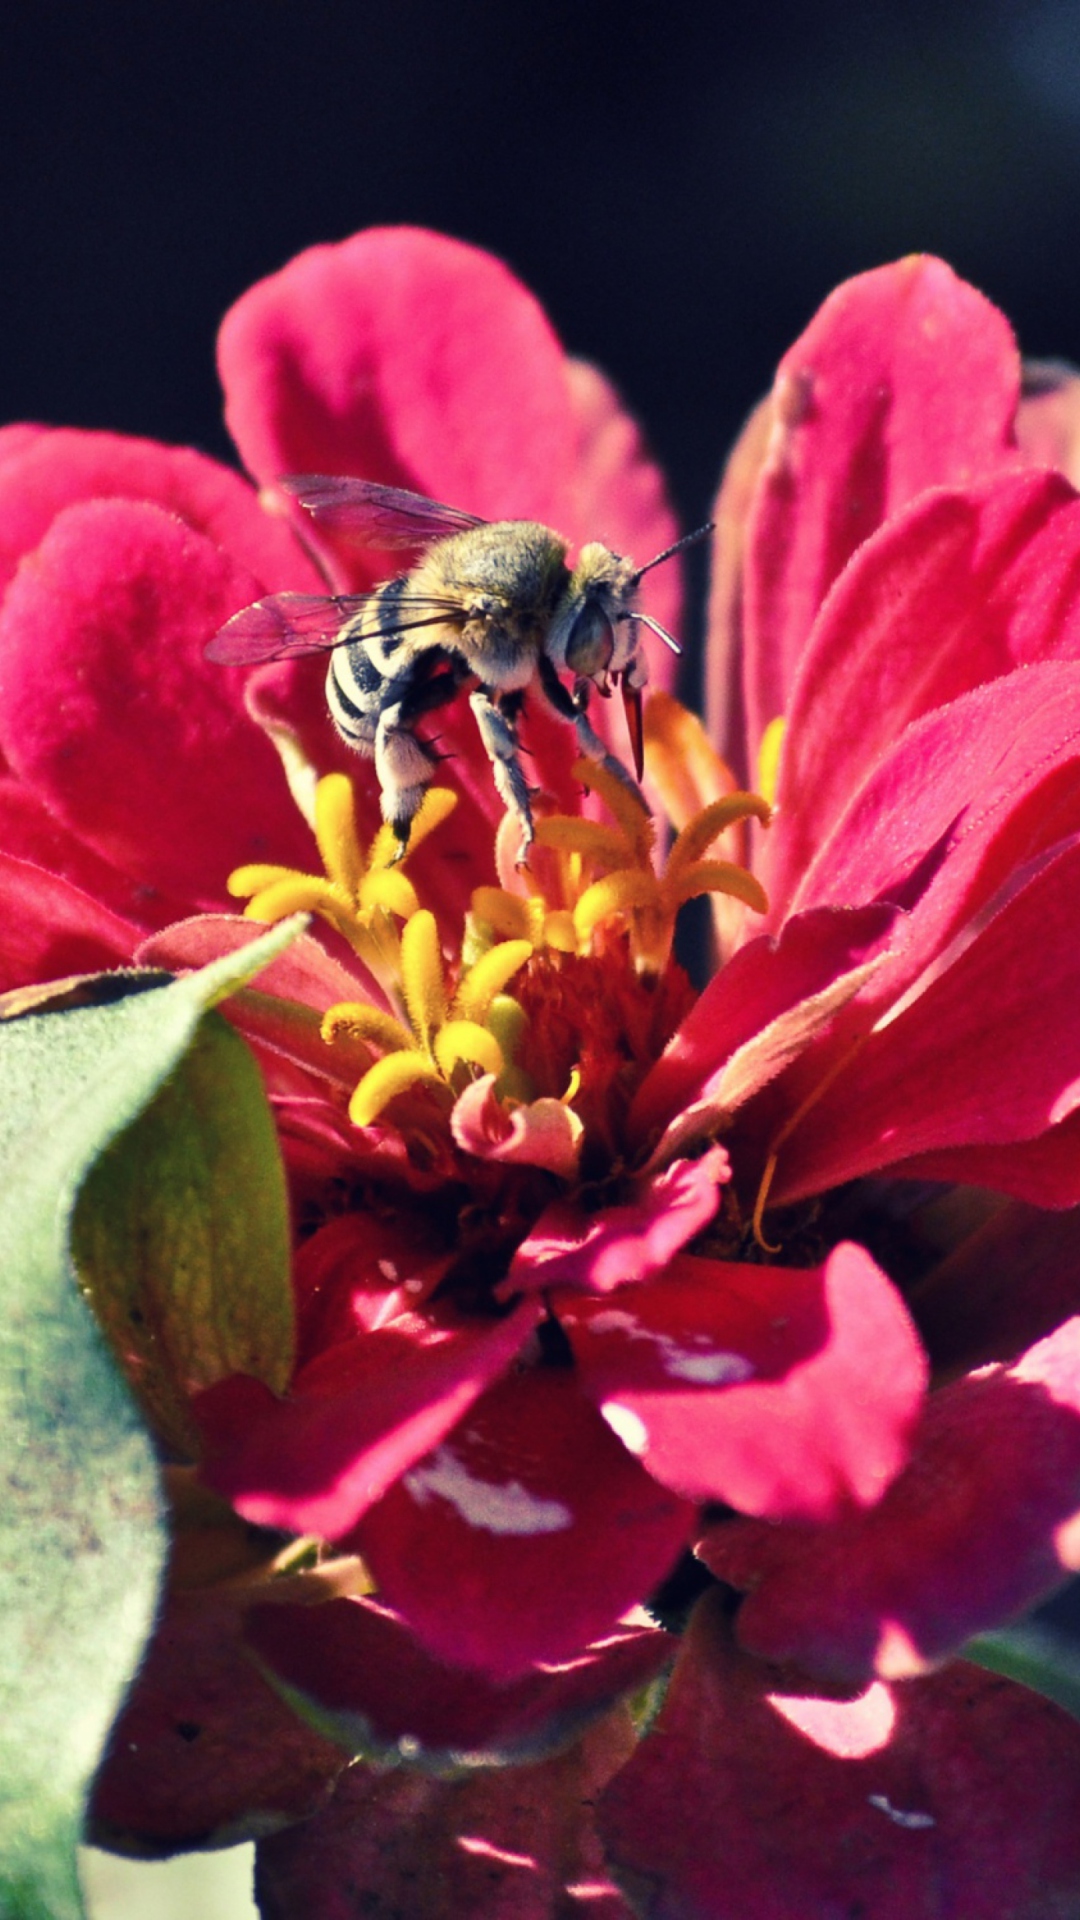 Обои Bee On Flower 1080x1920